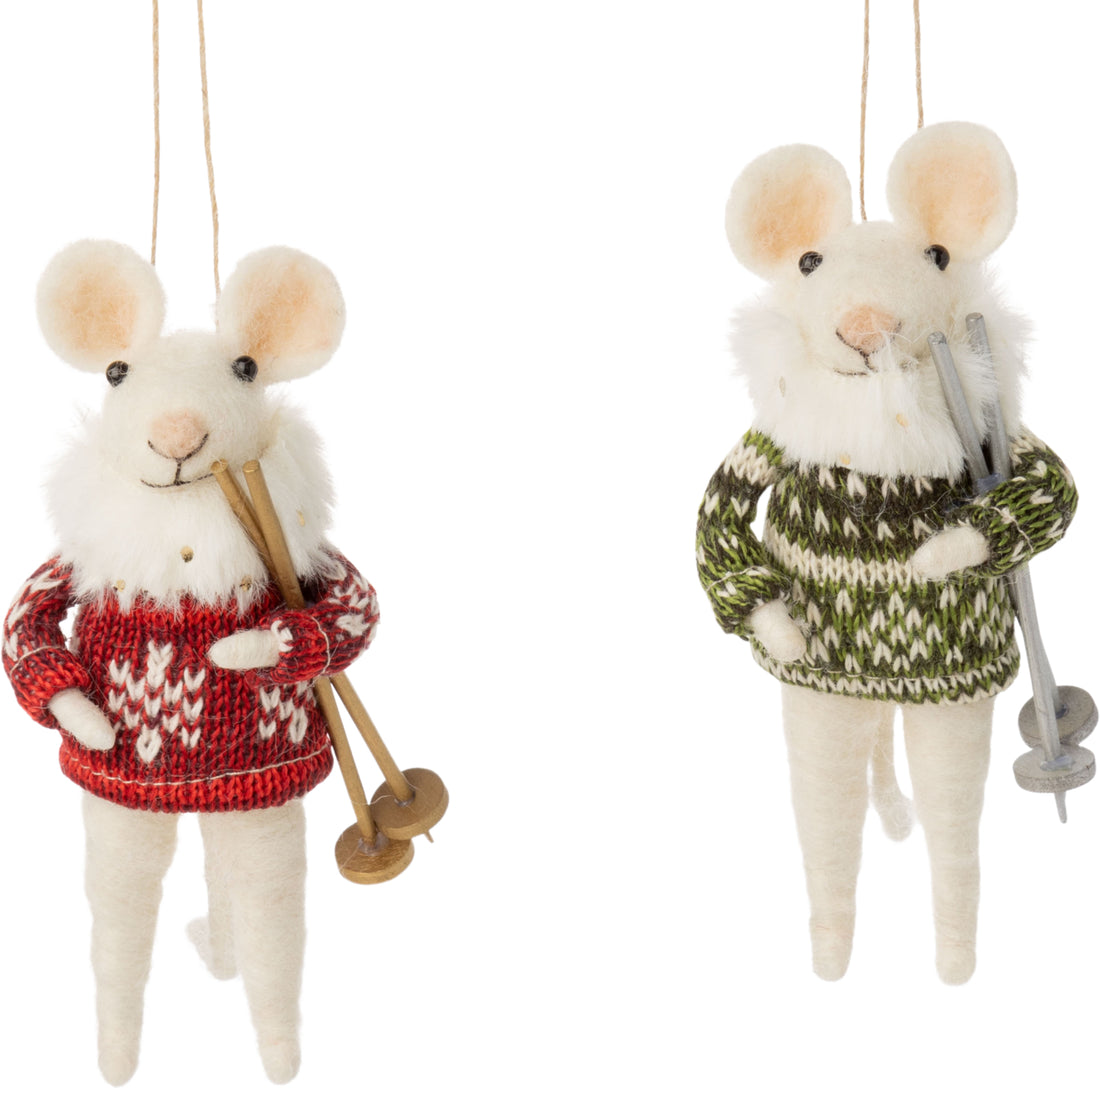 Felt Nordic Mice Ornaments, Set of 2